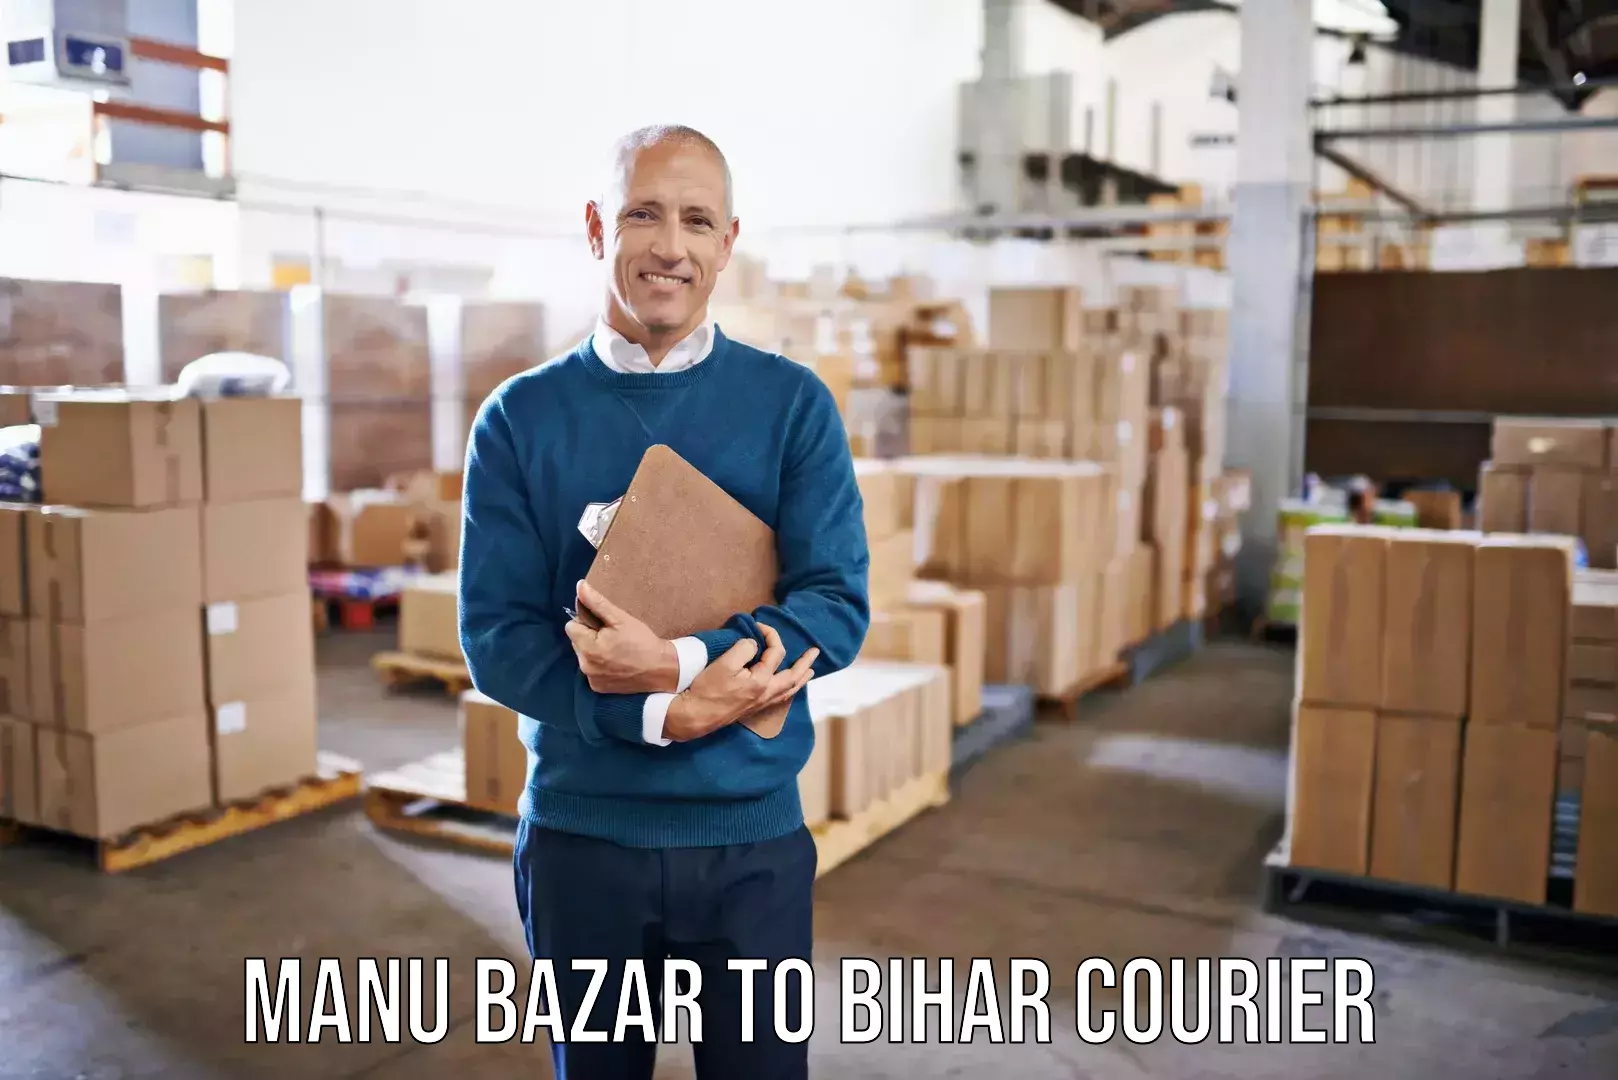 Home moving experts Manu Bazar to Malmaliya